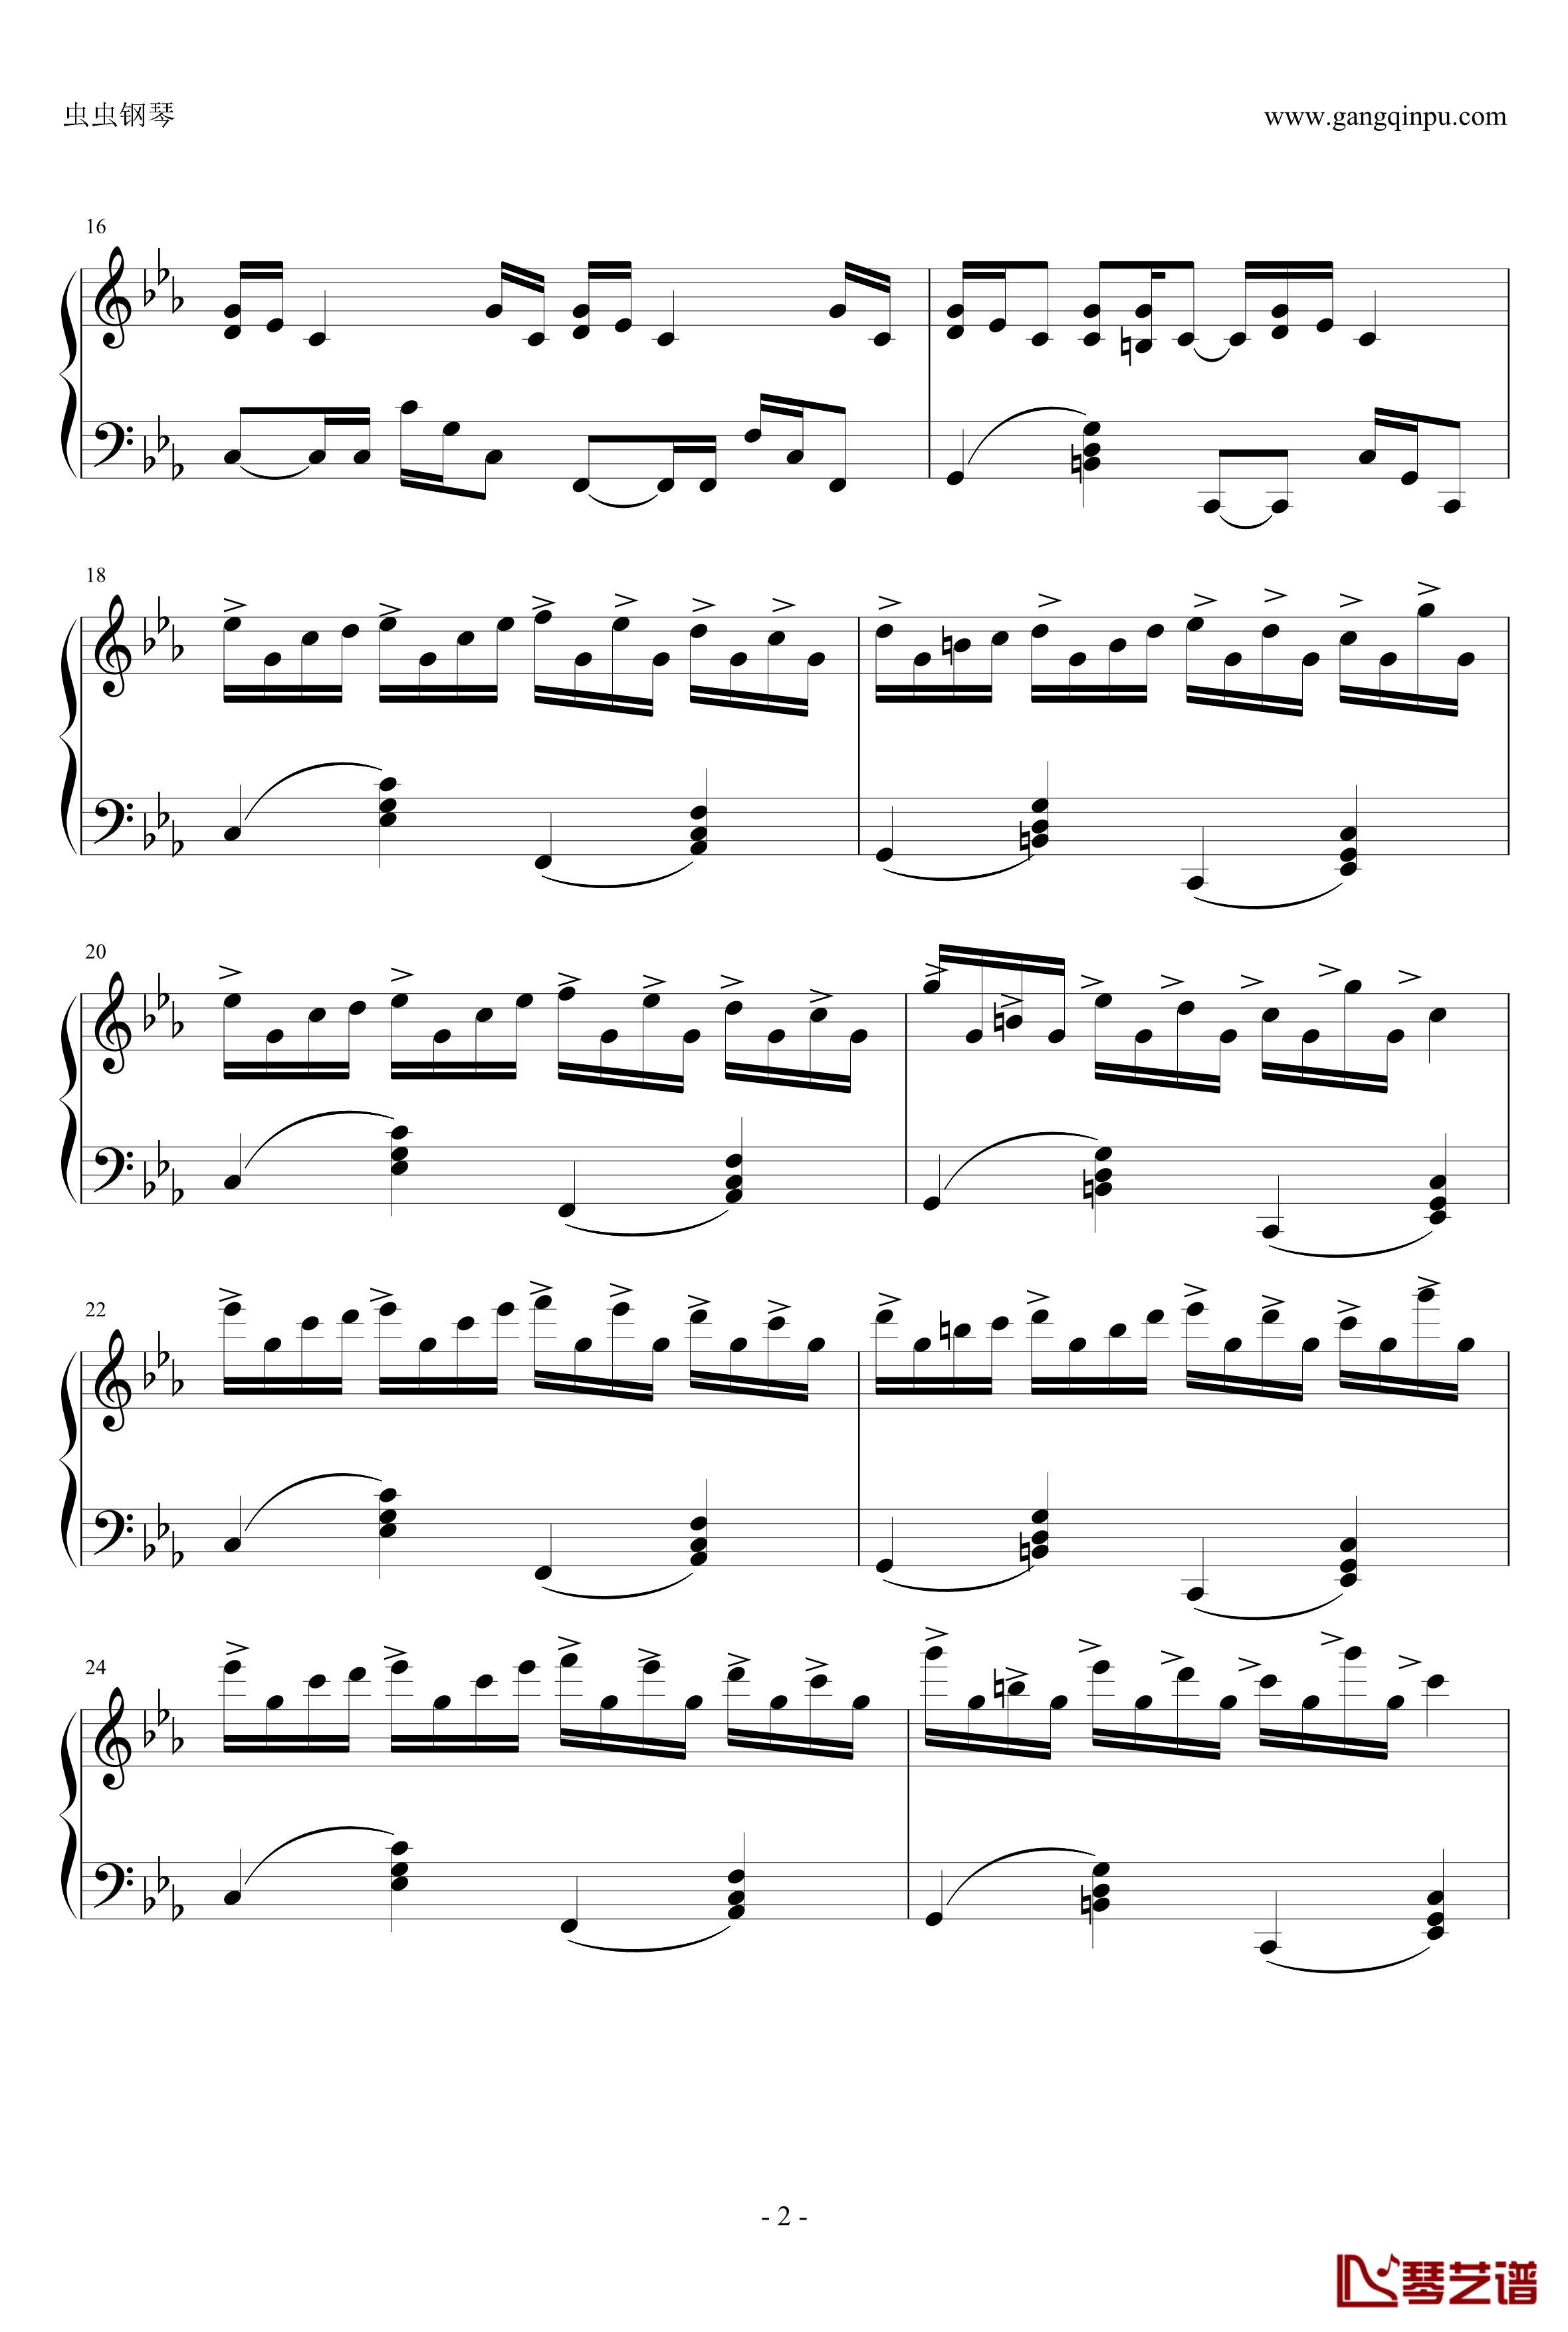 克罗地亚狂想曲钢琴谱-完美版-马克西姆-Maksim·Mrvica2